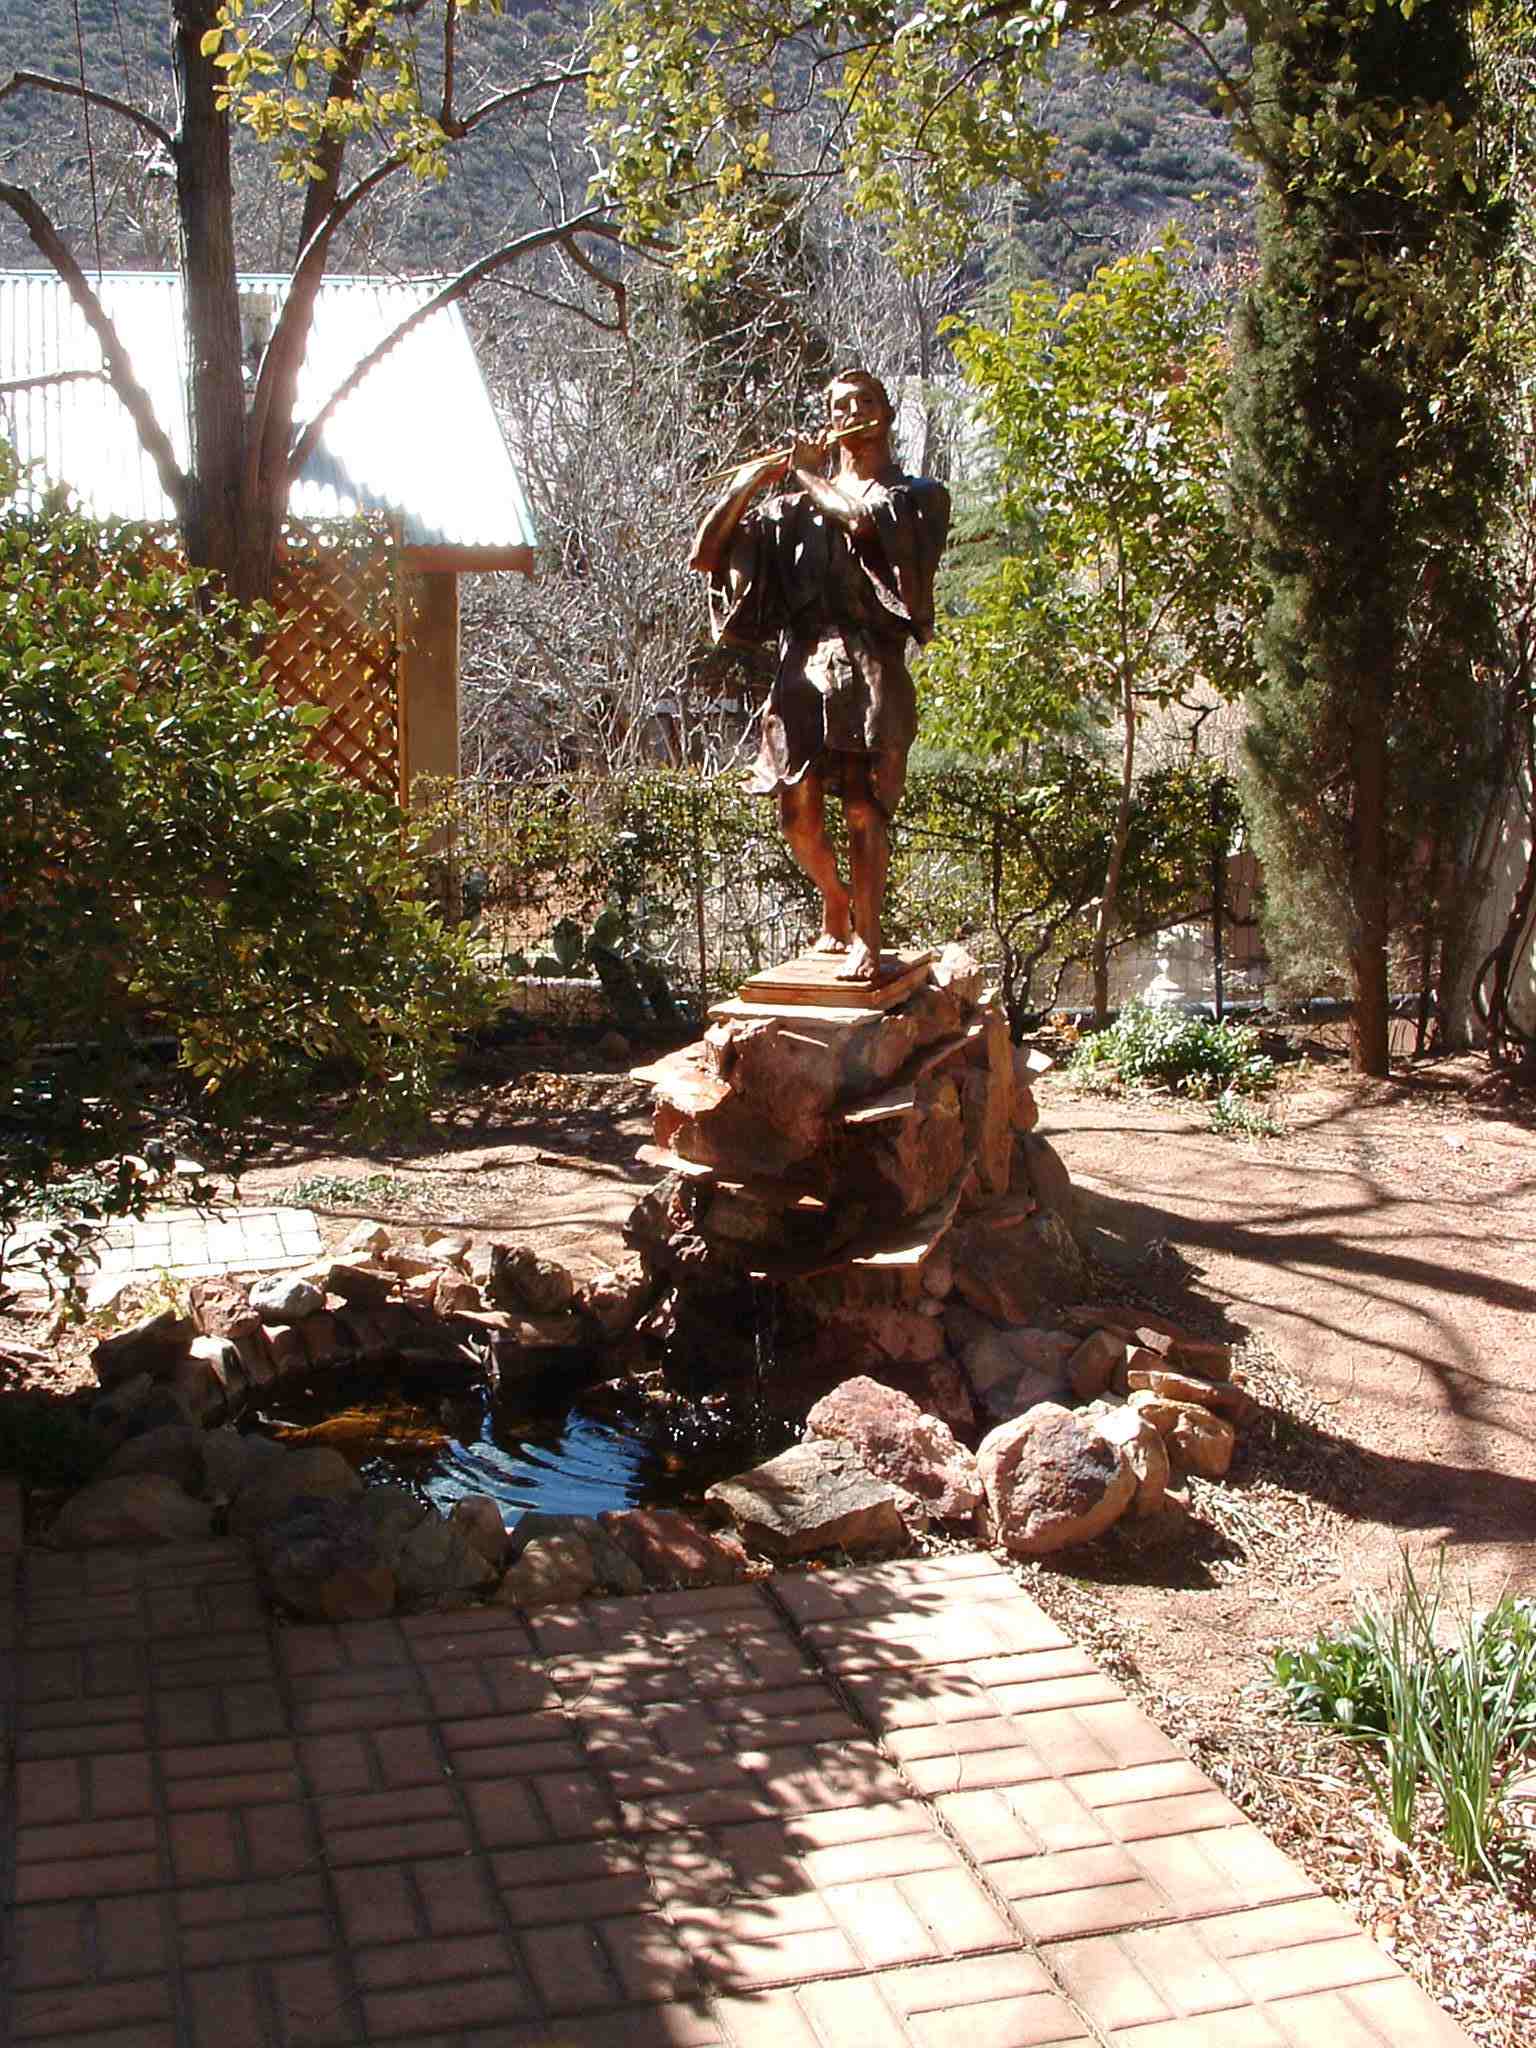 Tamino sculpture in garden